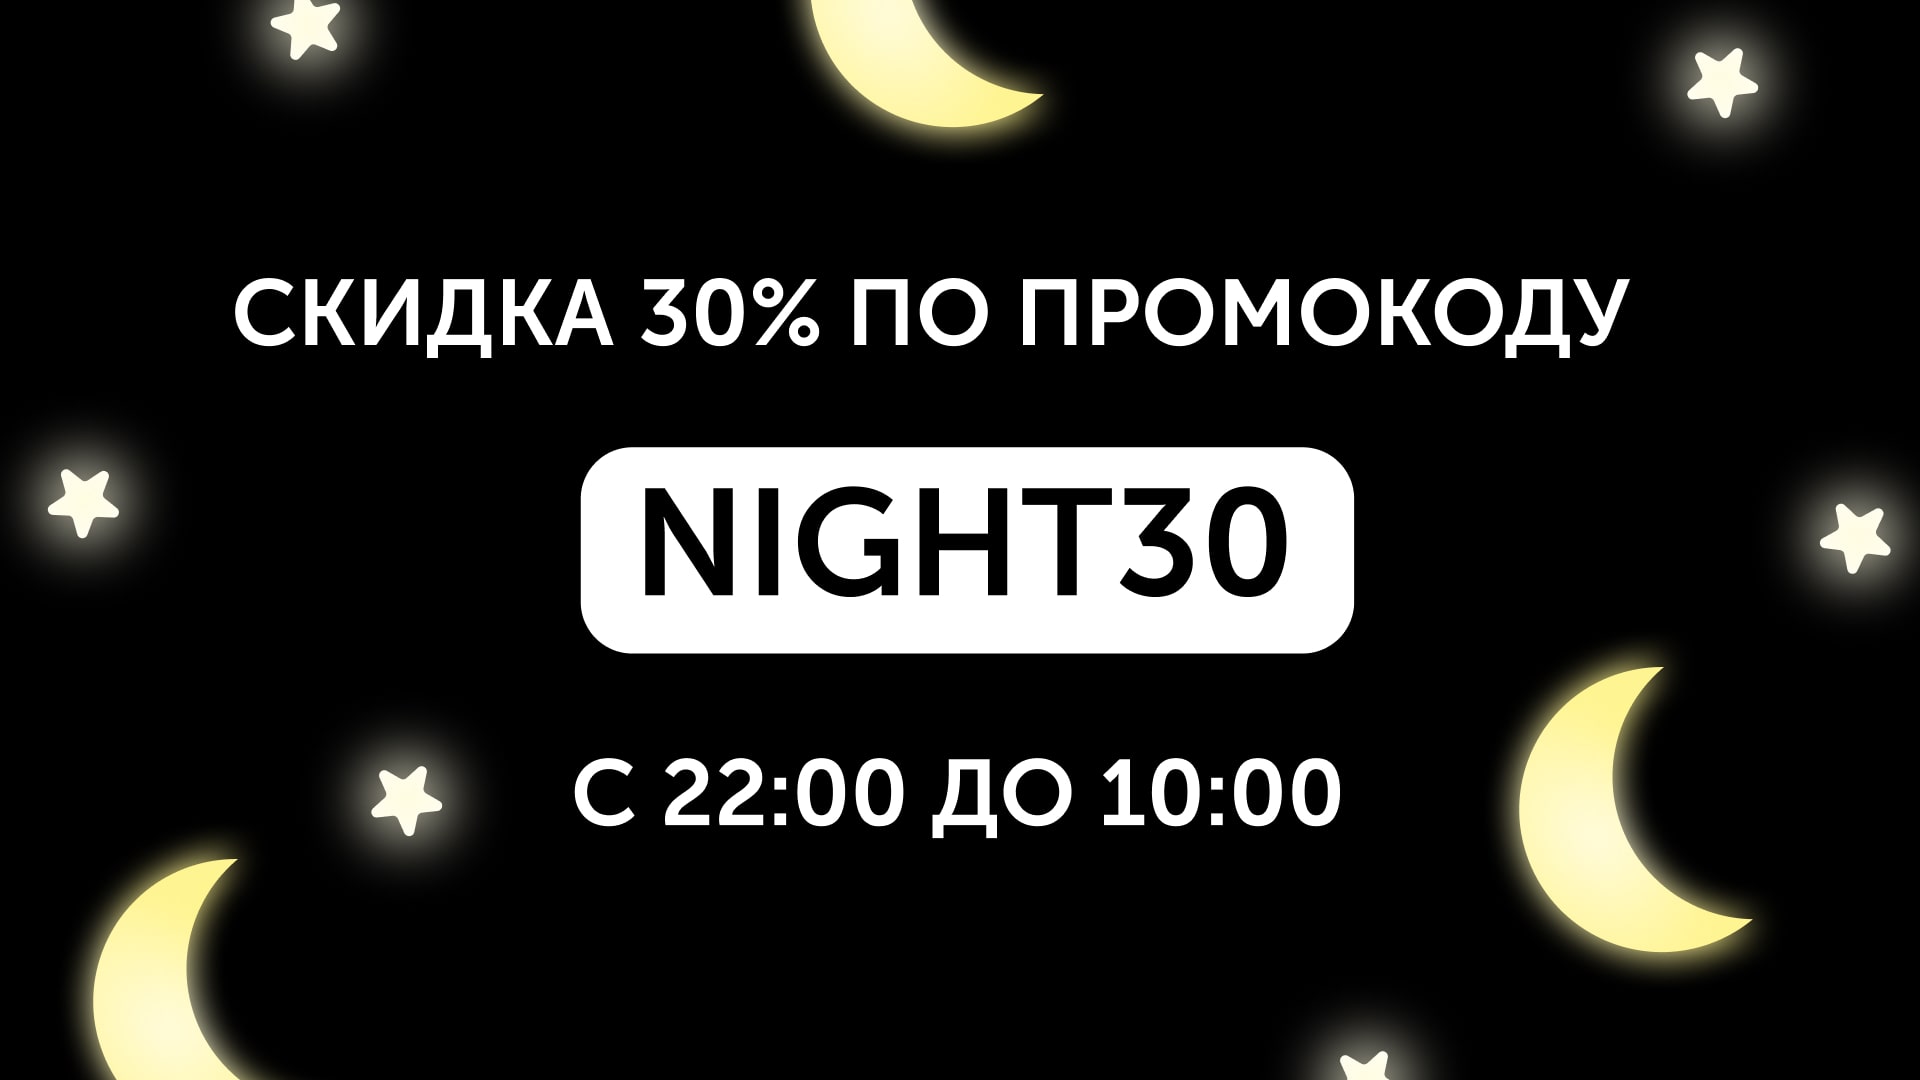 Ночная скидка -30% по промокоду NIGHT30